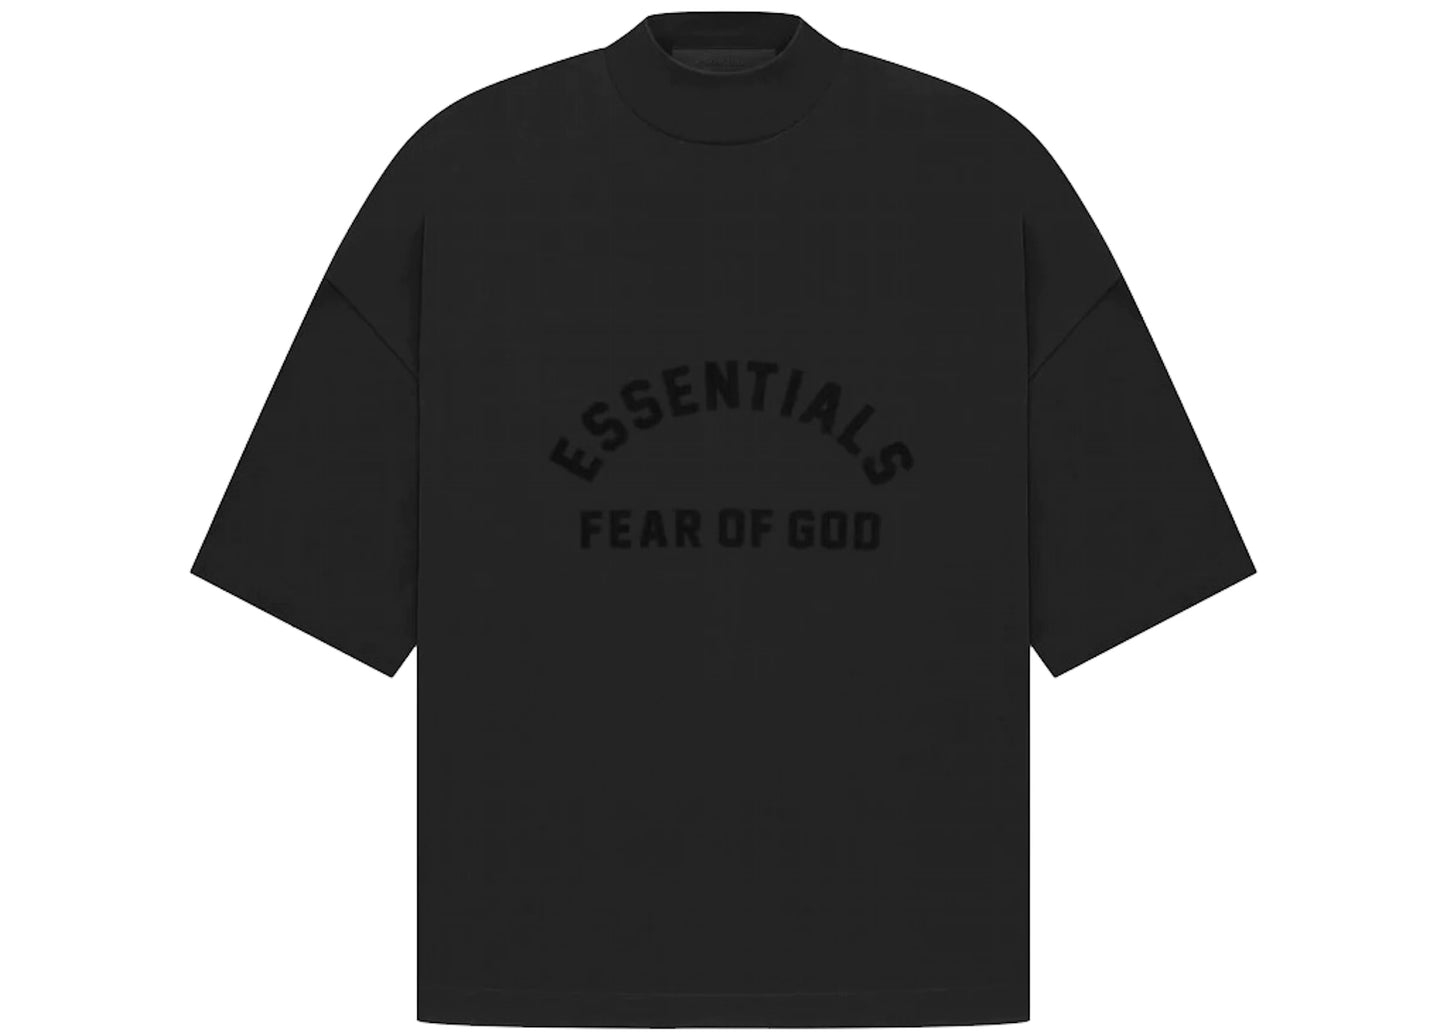 FEAR OF GOD ESSENTIALS TEE 'JET BLACK' (SS23)